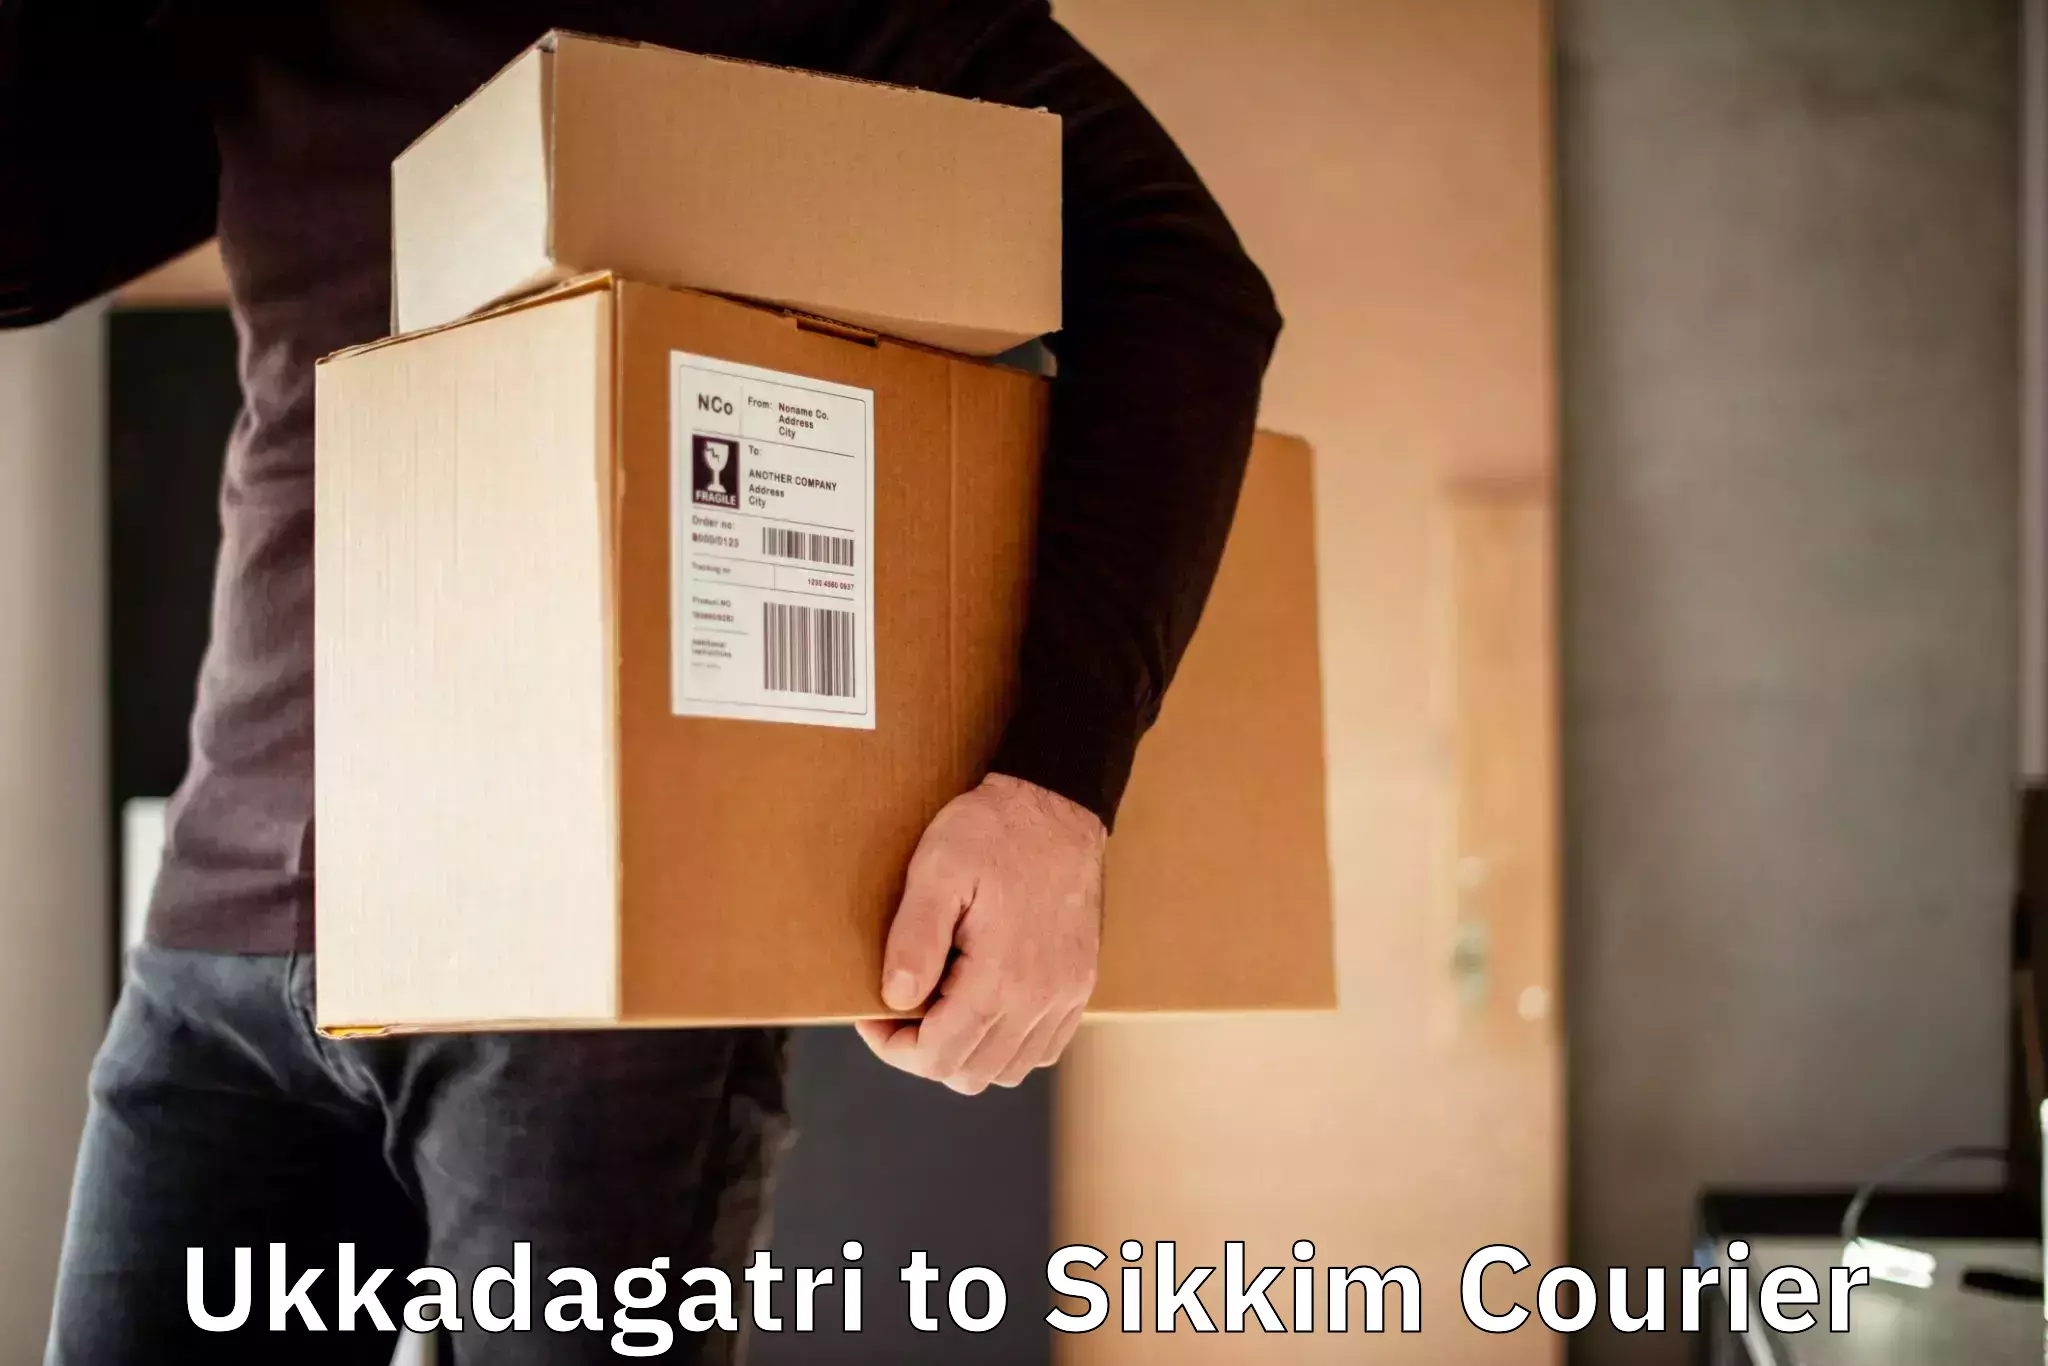 24/7 courier service Ukkadagatri to West Sikkim